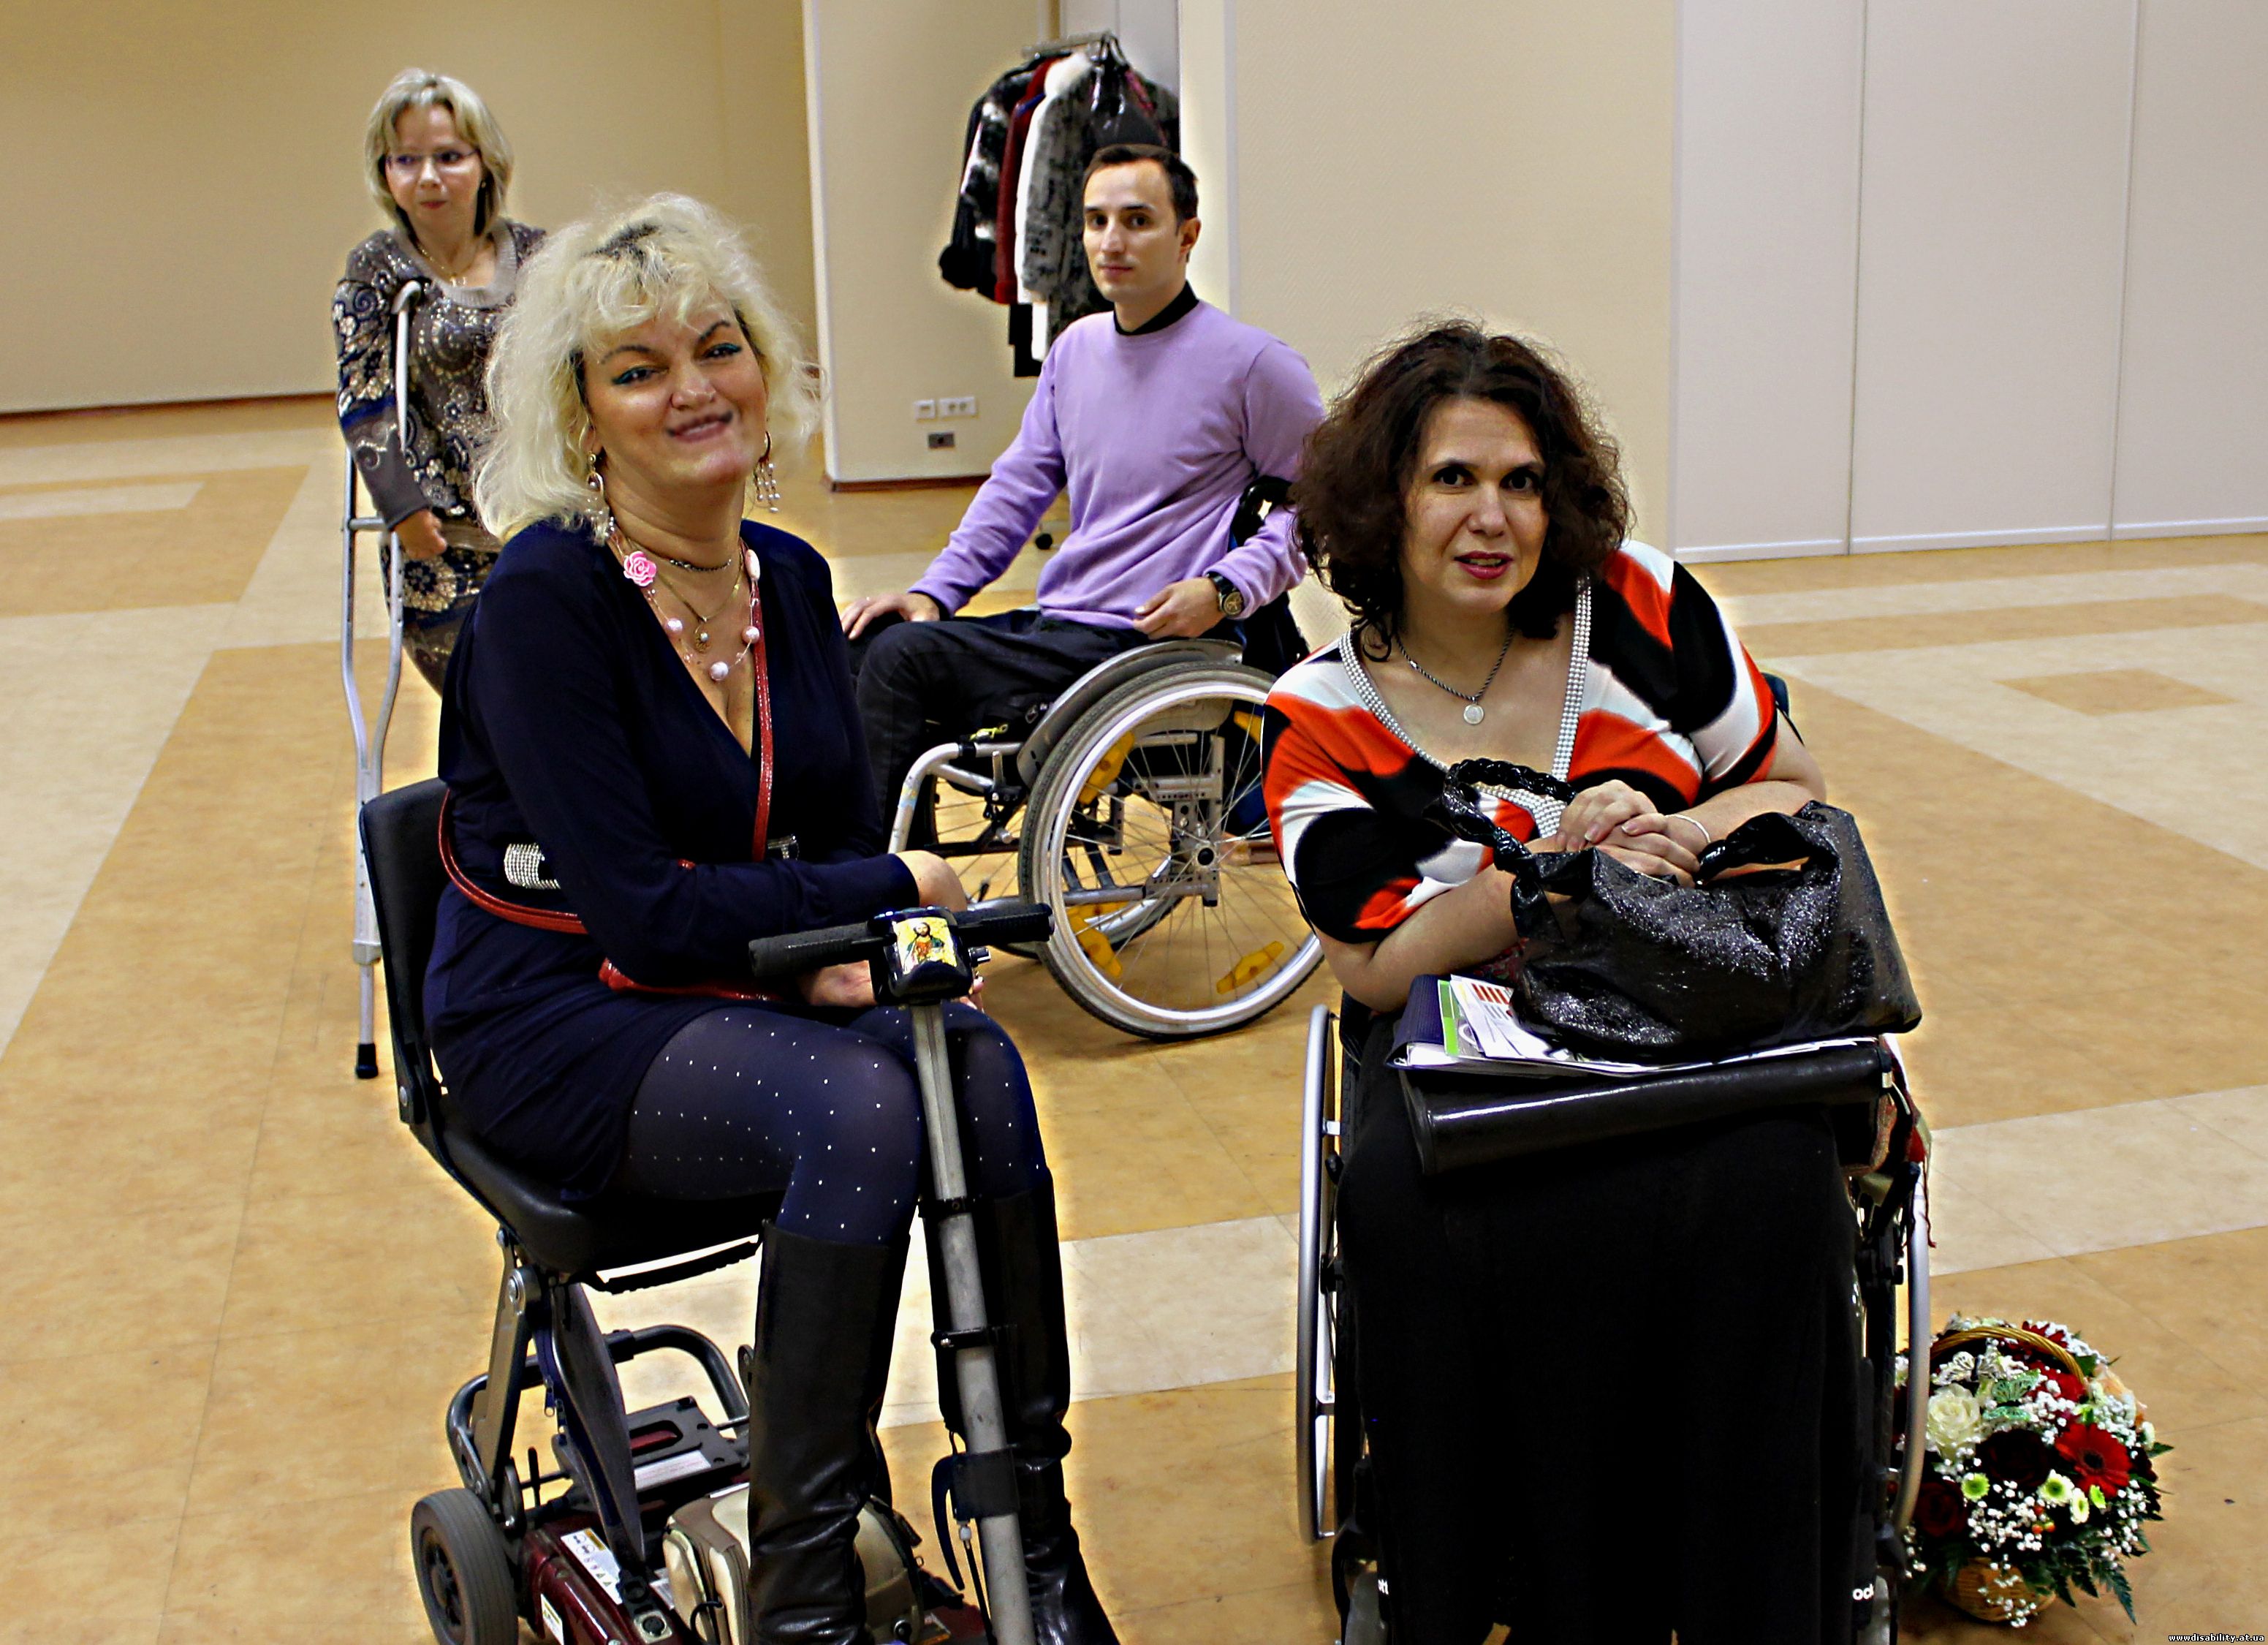  женщины с инвалидностью, творчество инвалидов